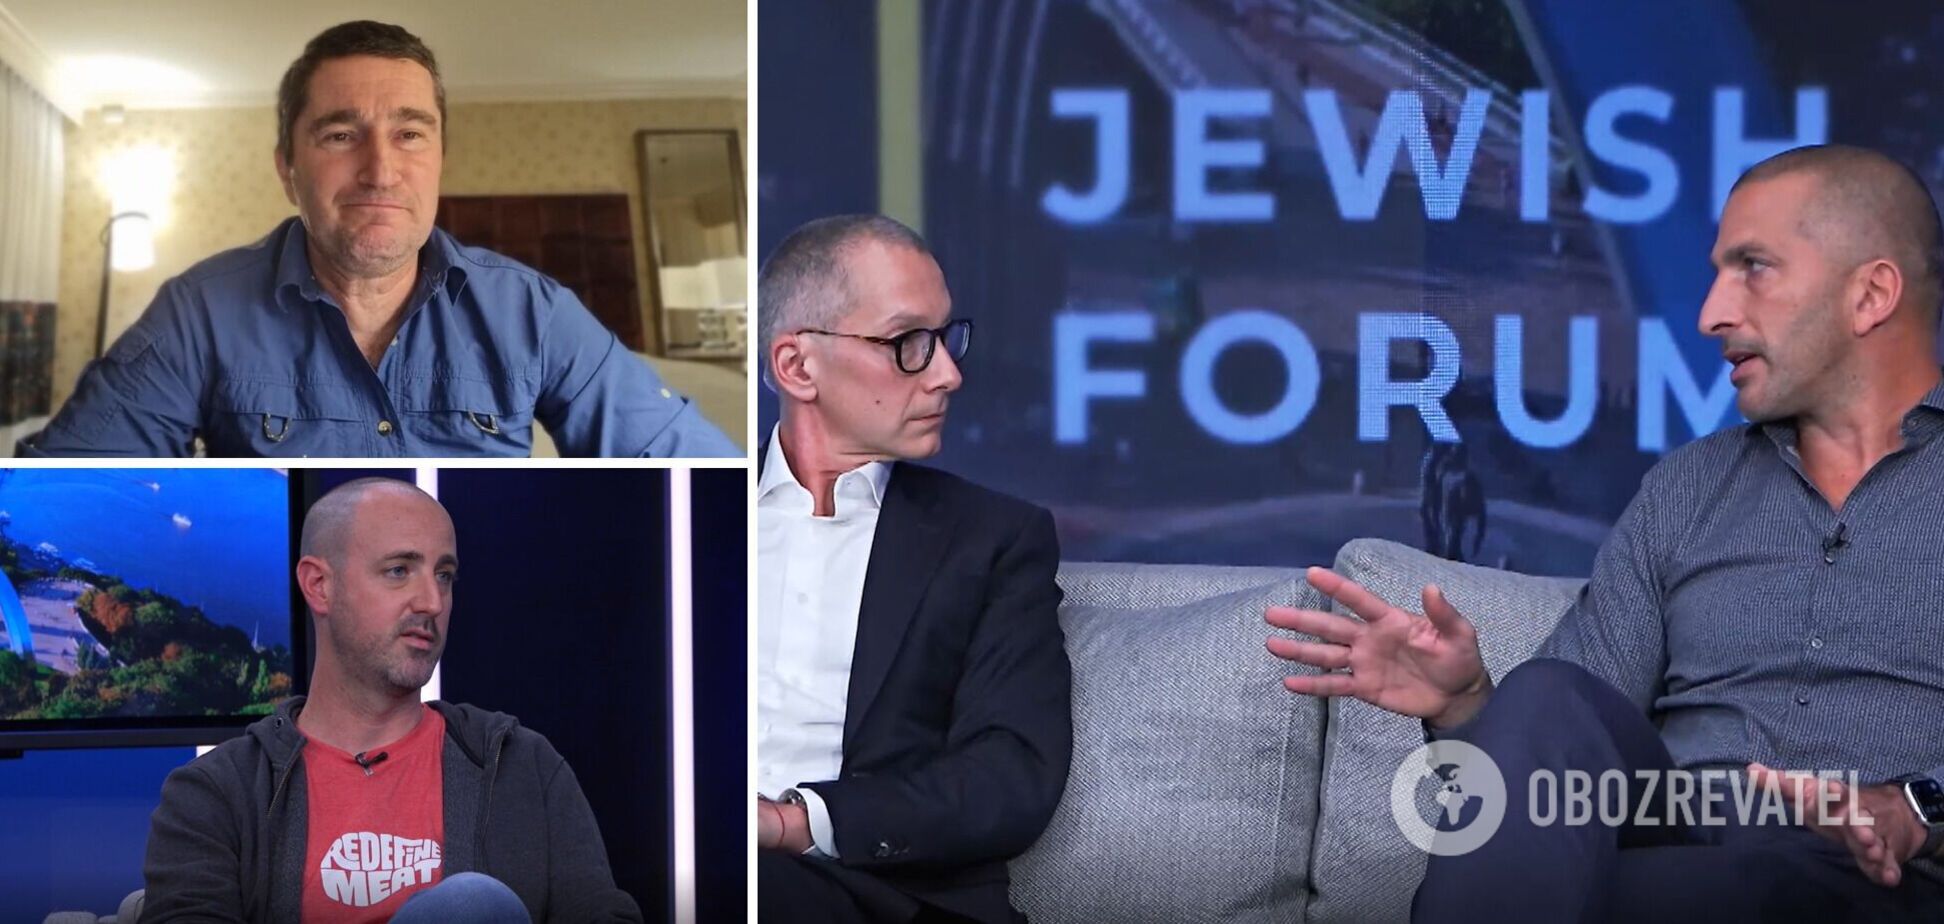 Kyiv Jewish Forum: чому Ізраїль є світовим лідером у галузі стартапів та досвід, який можуть запозичити інші країни